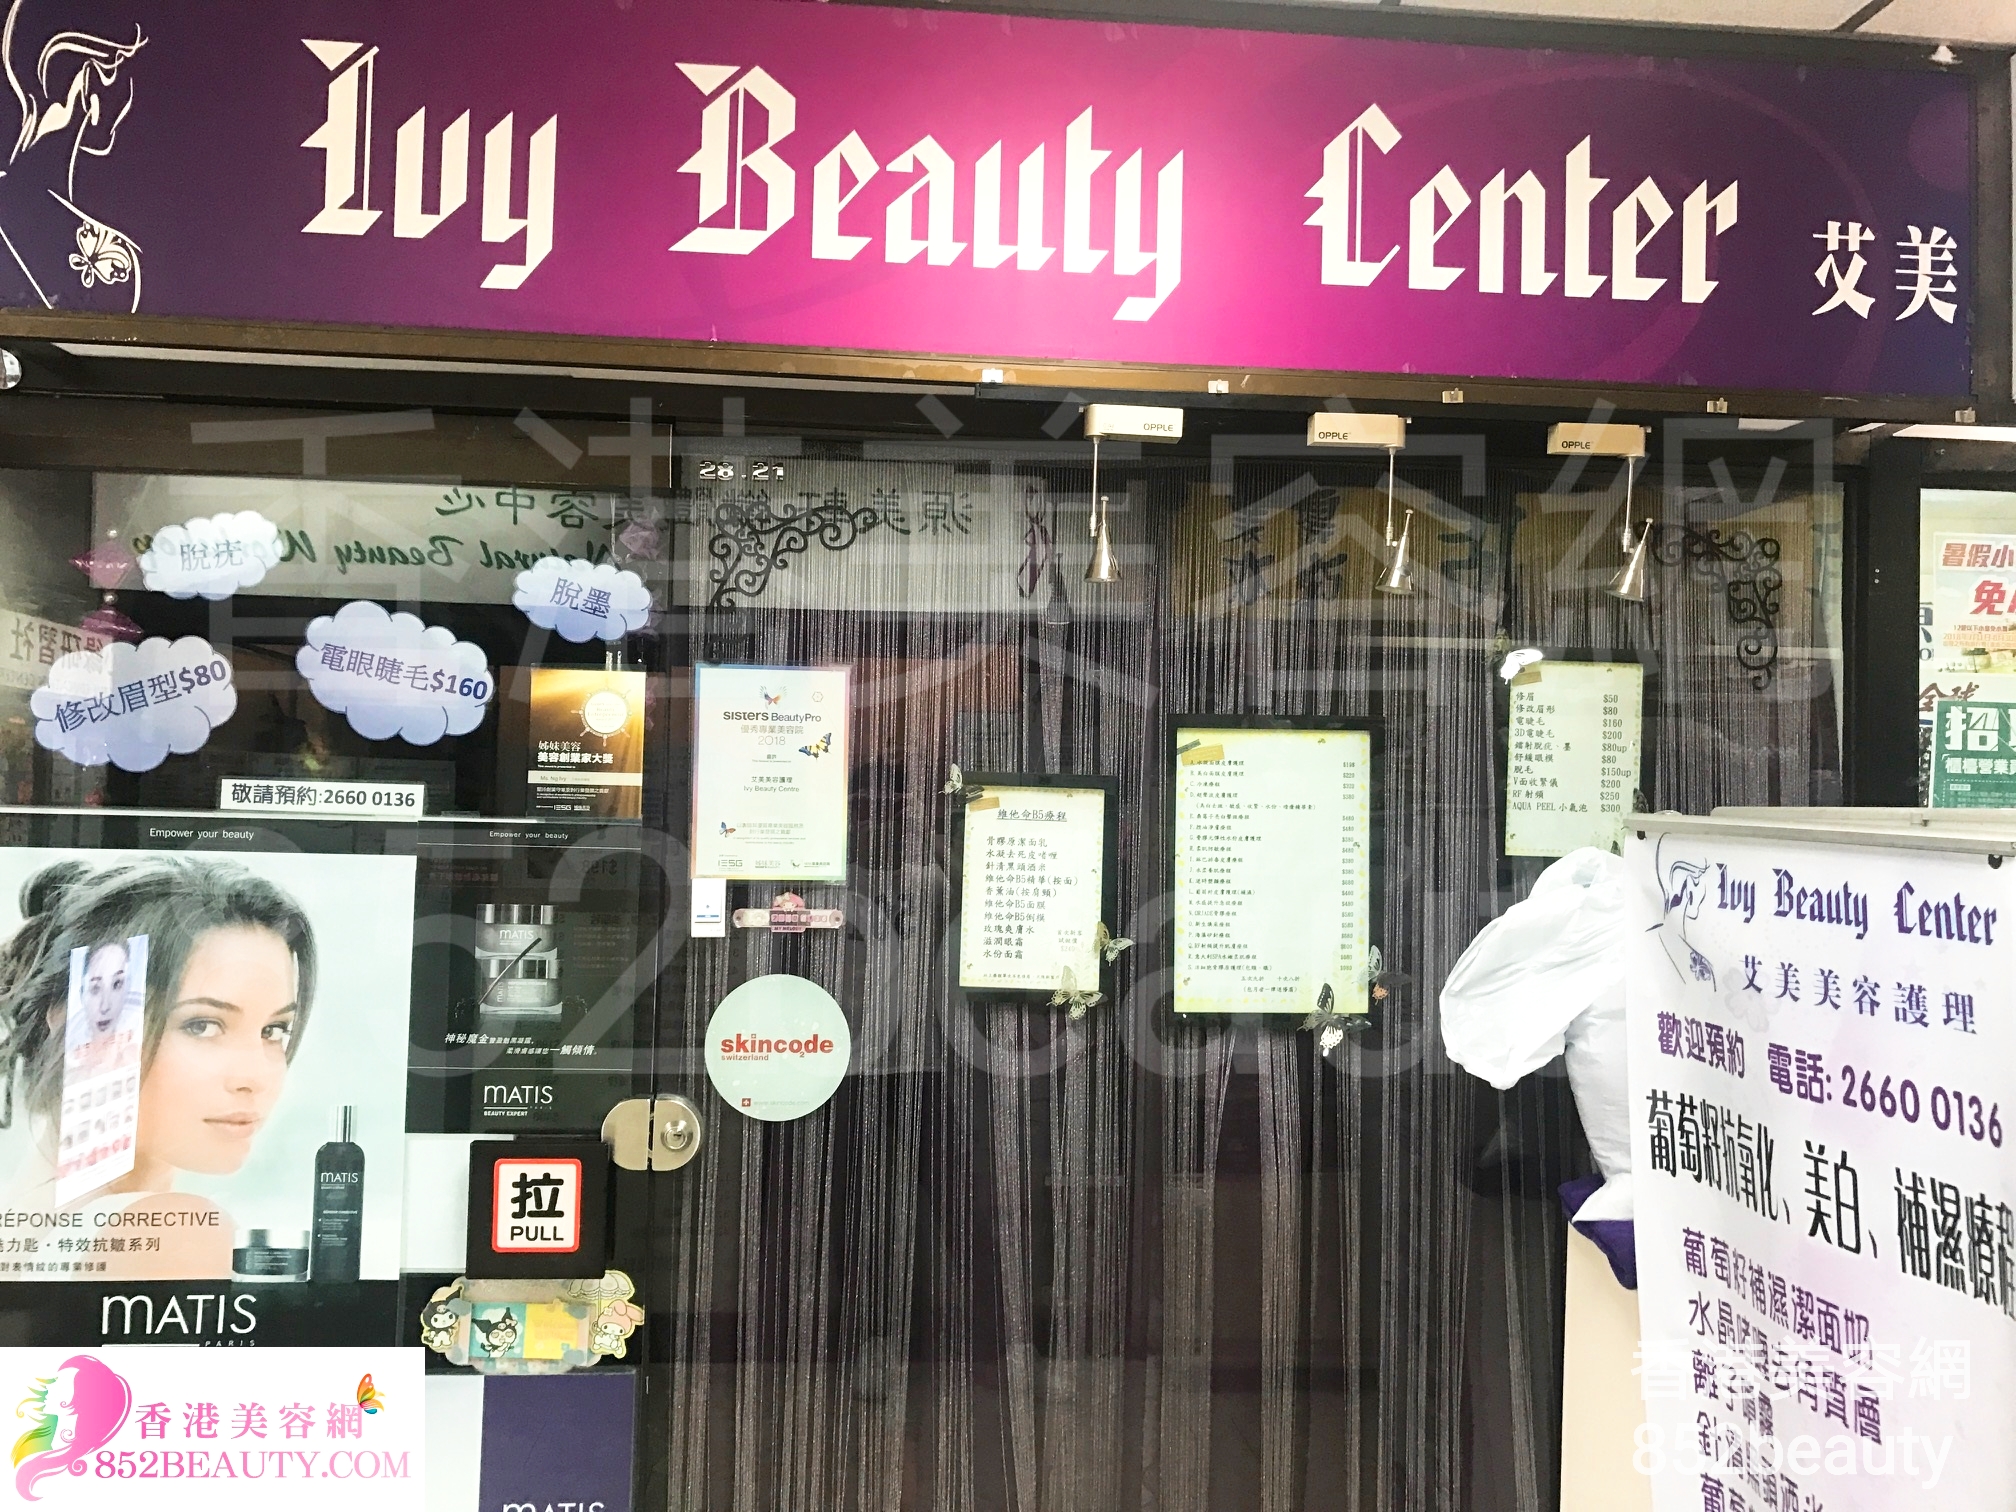 香港美容網 Hong Kong Beauty Salon 美容院 / 美容師: 艾美美容 Ivy Beauty Centre